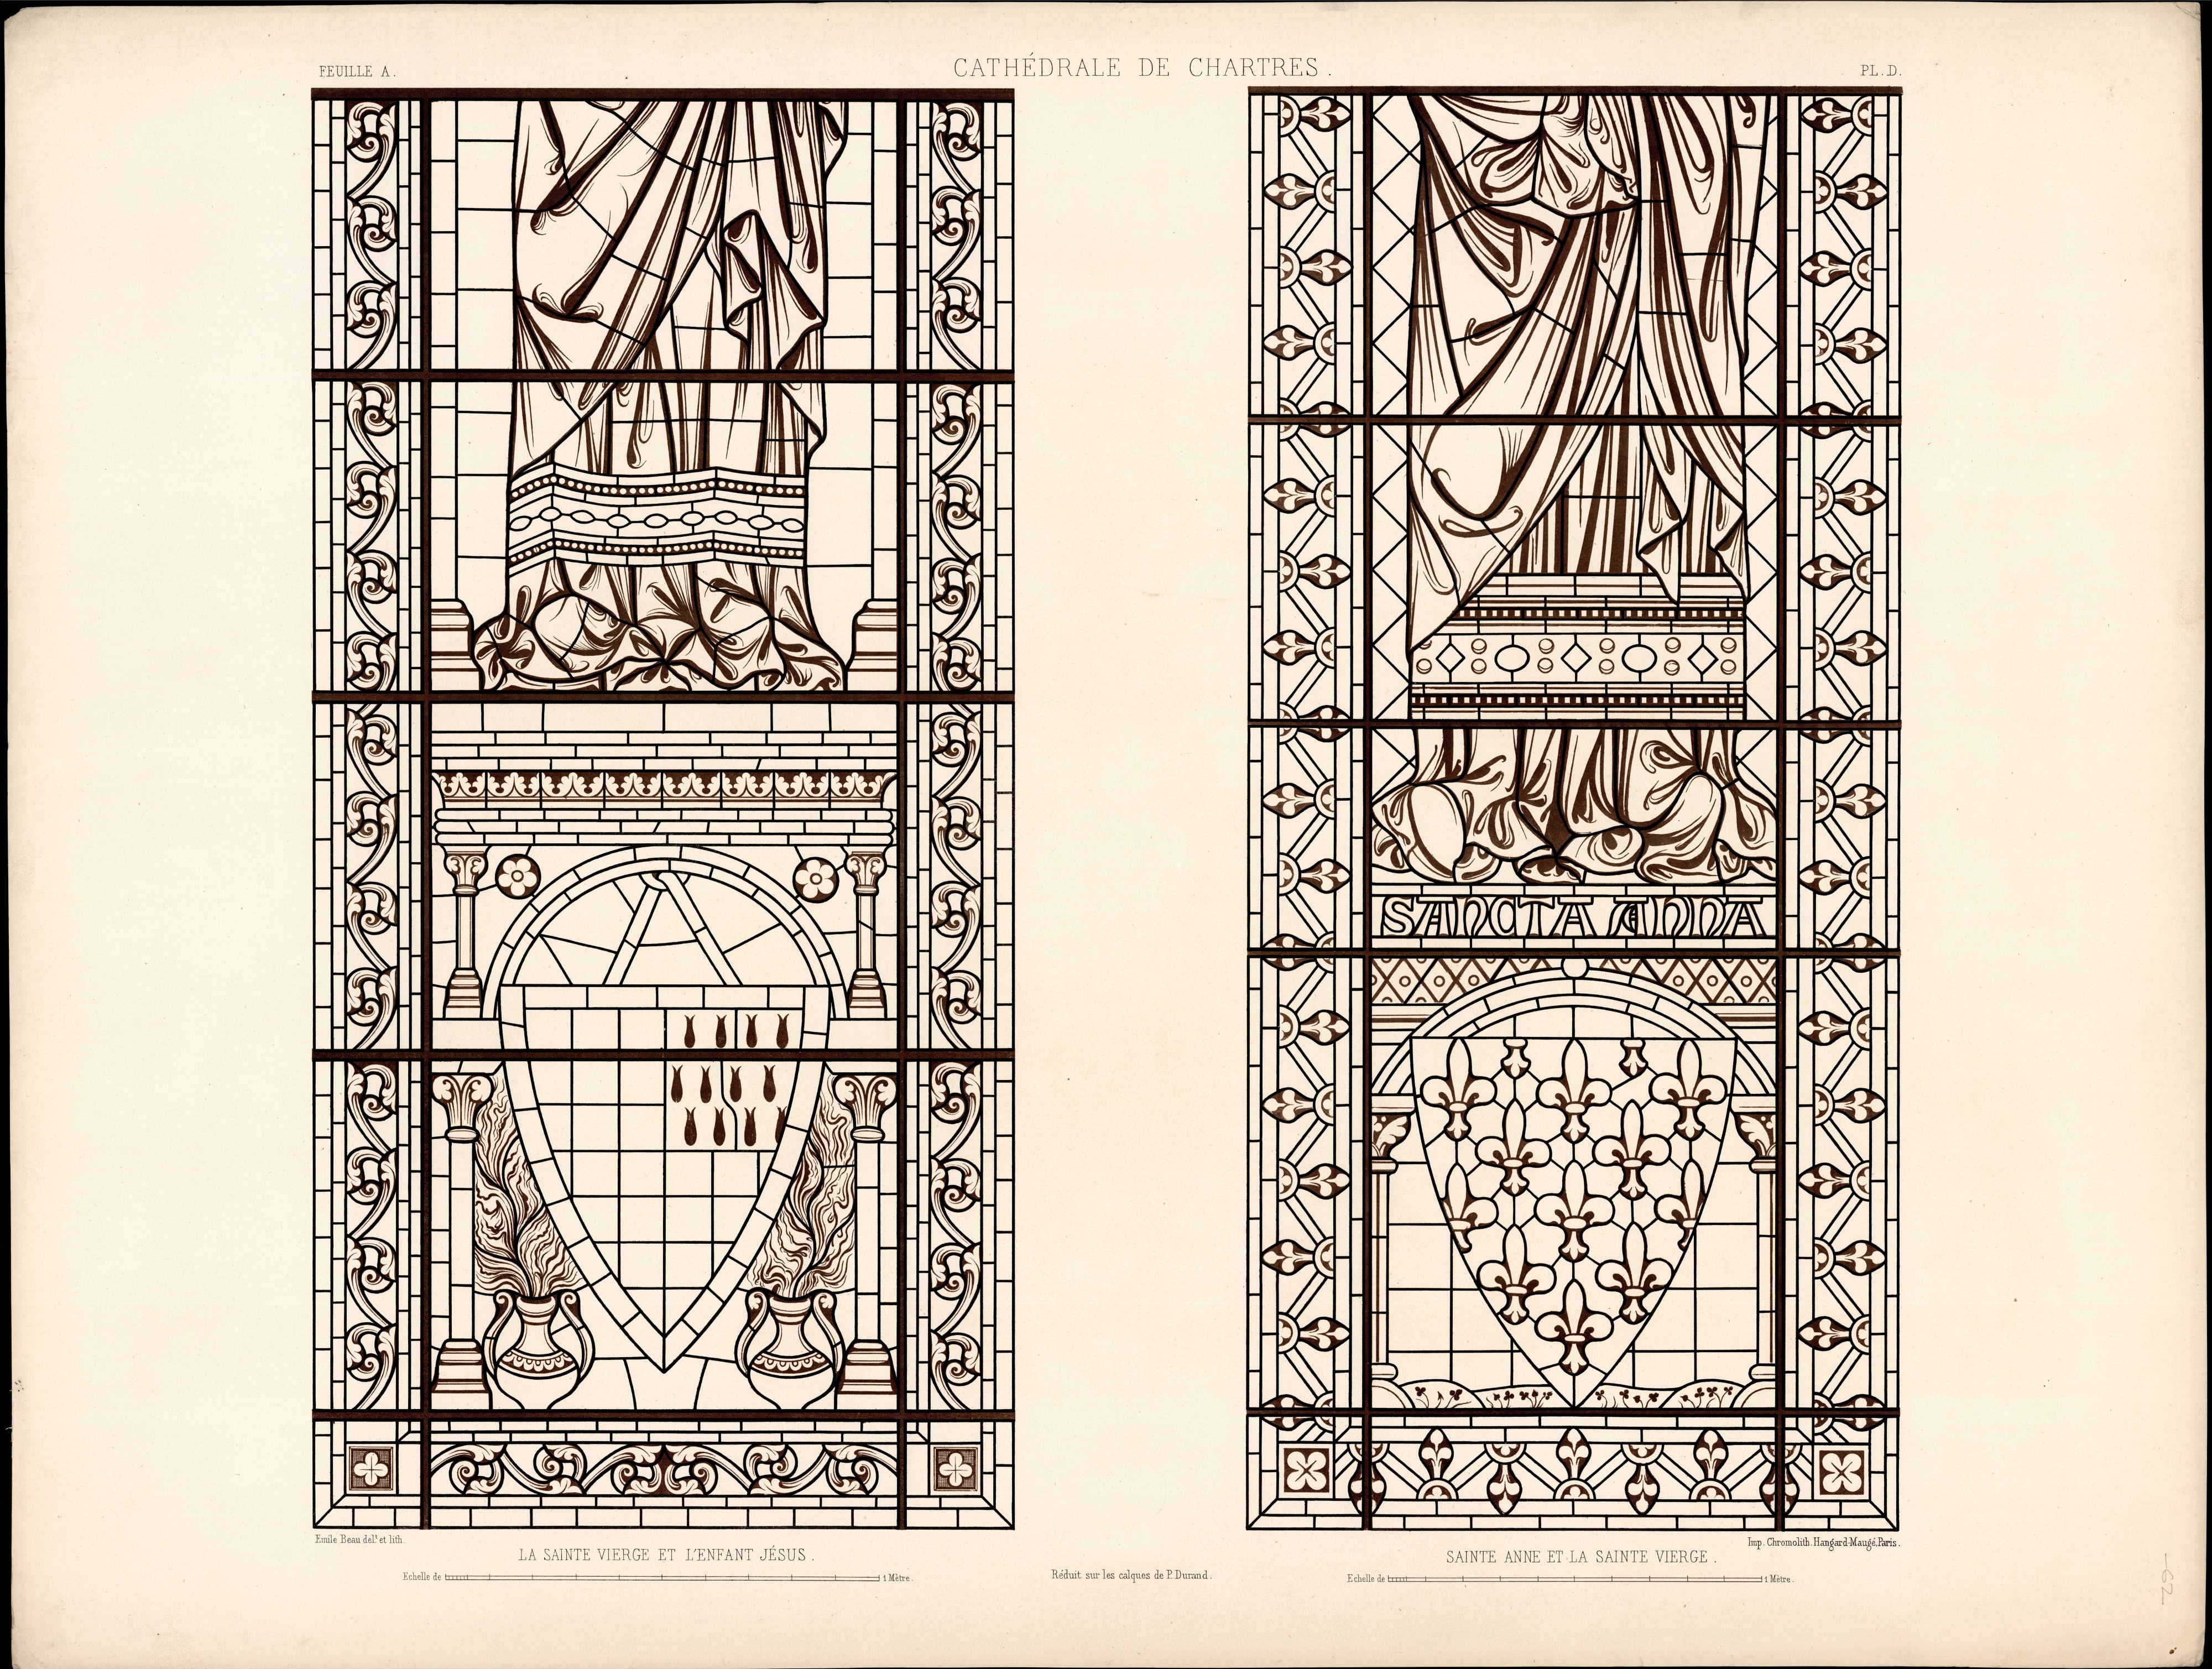 Monografie de la Cathedrale de Chartres - Atlas - Vitrail de sainte Anne portant la Sainte Vierge Feuille A